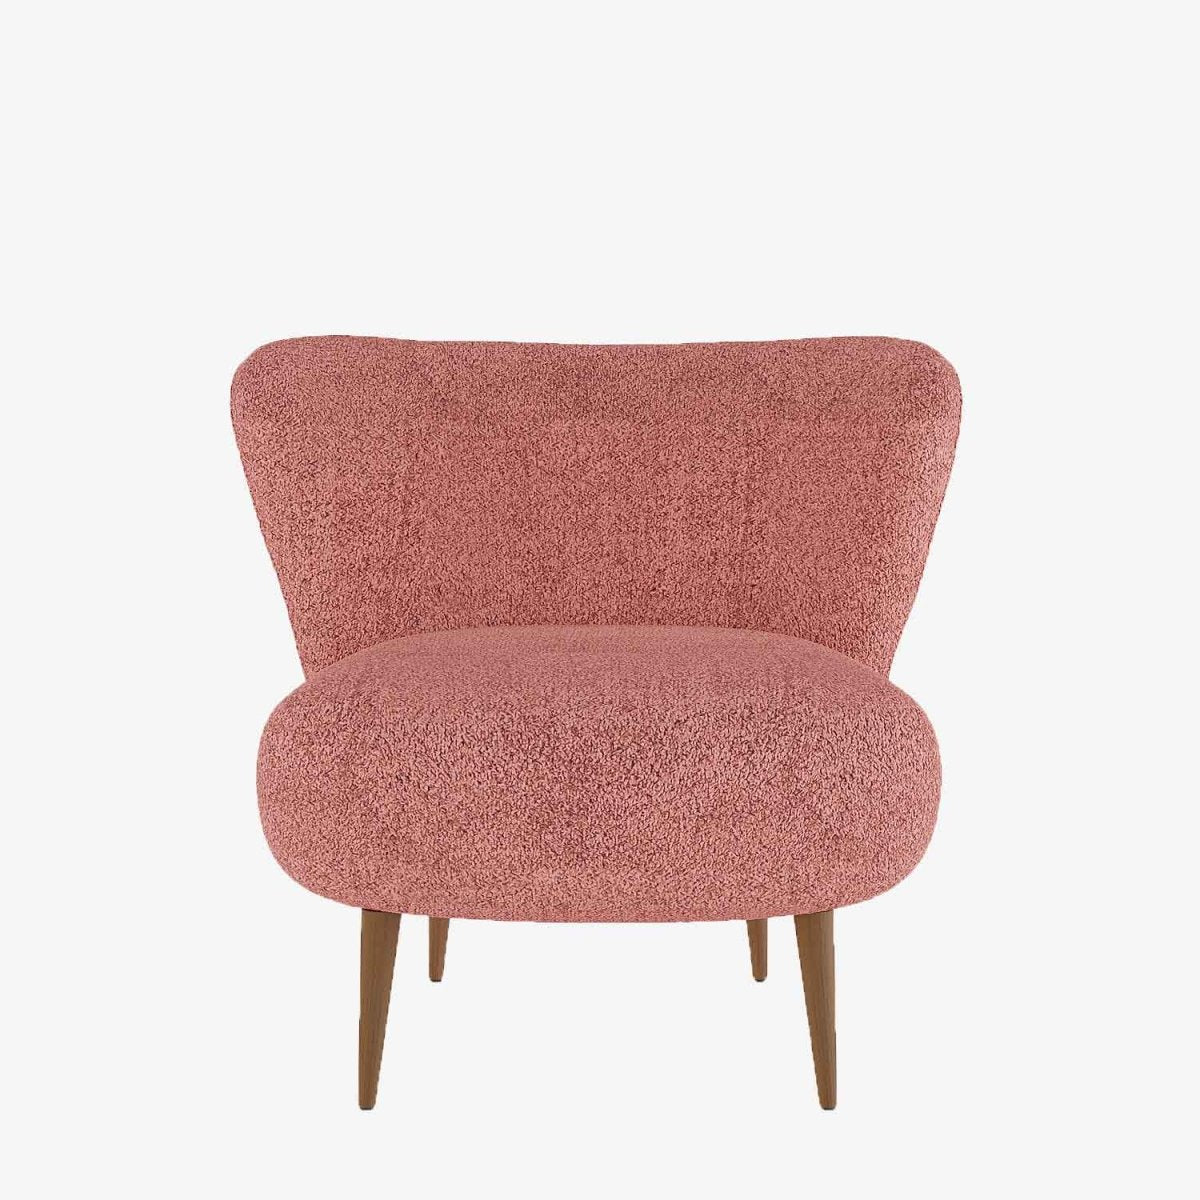 Fauteuil bas salon moderne style bohème chic en tissu bouclette rose et bois - Potiron Paris, la satisfaciton des assises design confortables et pas chères